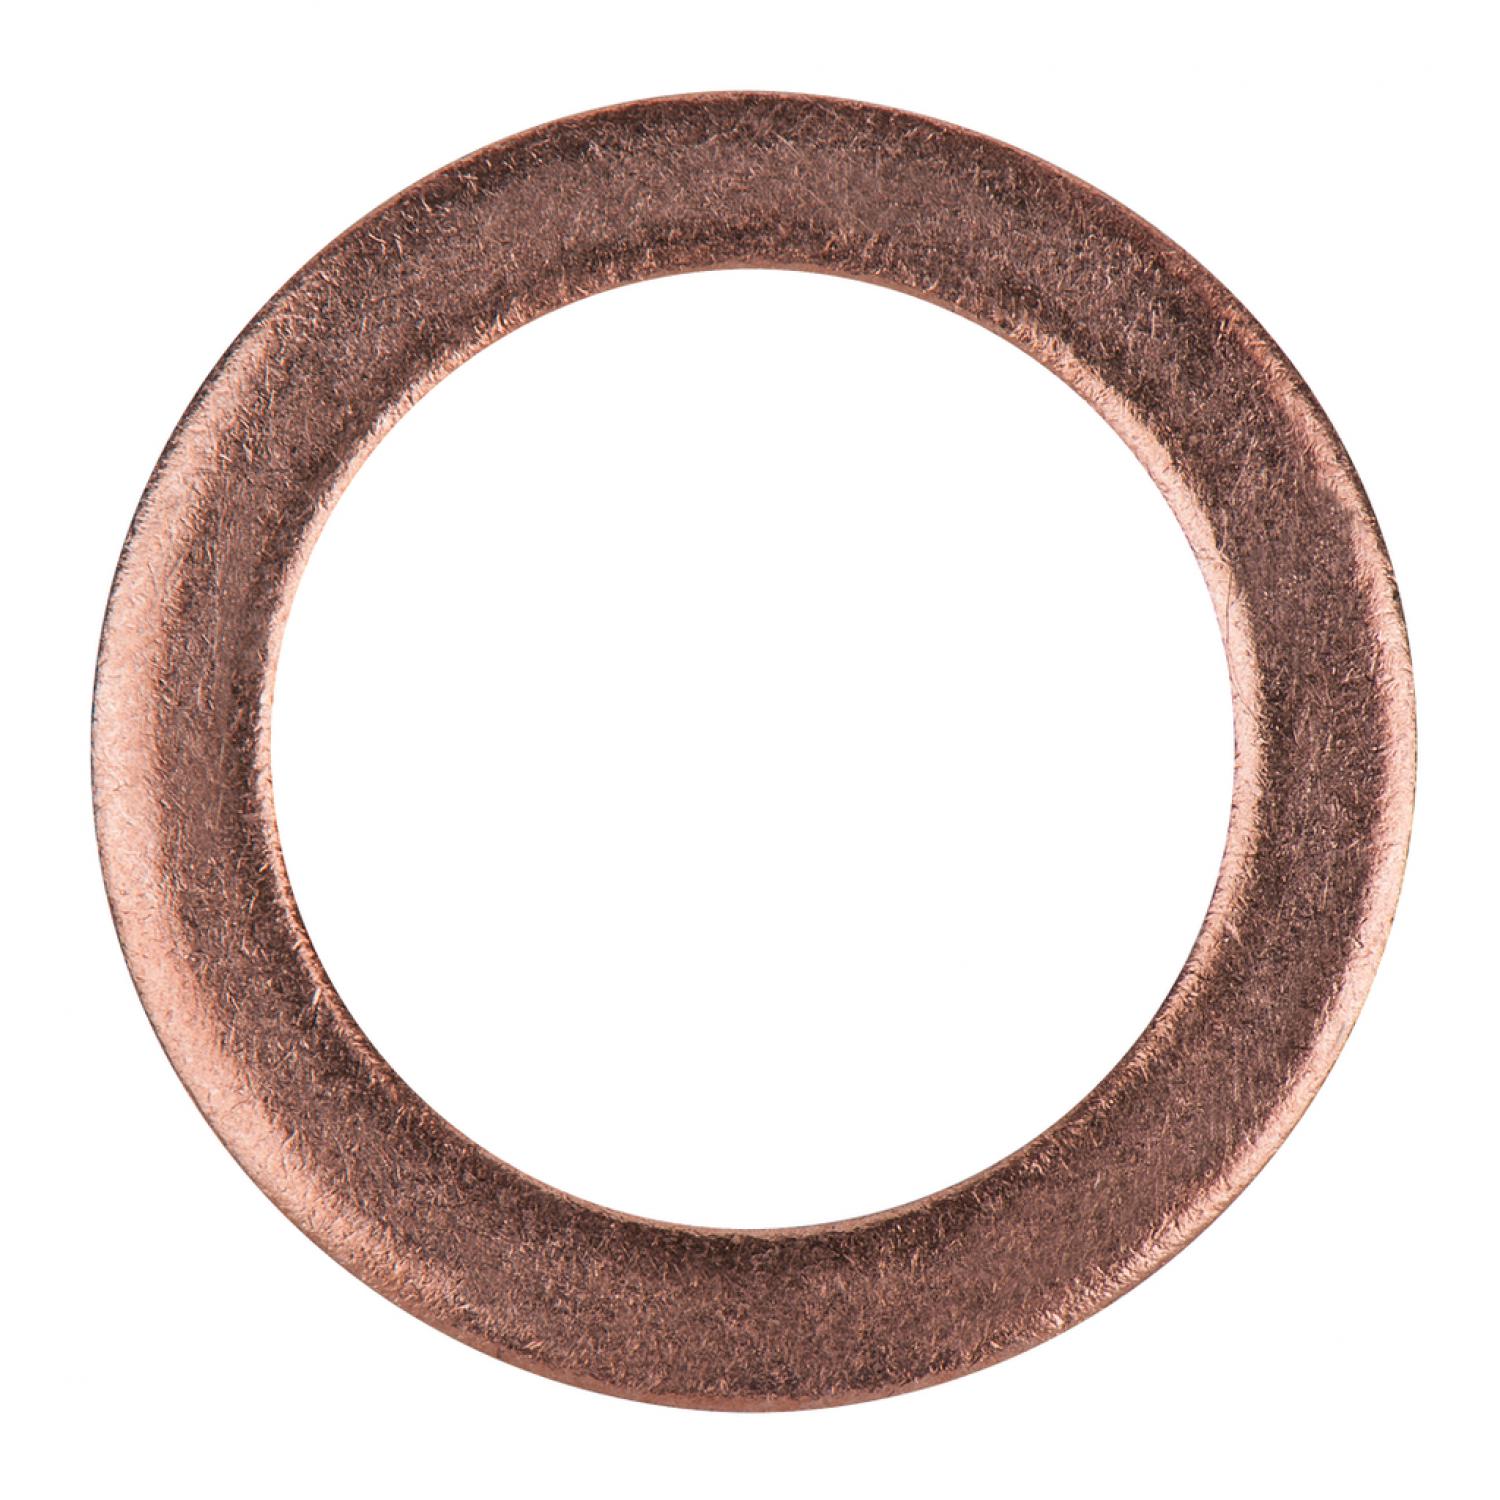 Уплотнительное кольцо, медное, внешний Ø 20 мм, внутренний Ø 14 мм, 1 шт в упаковке